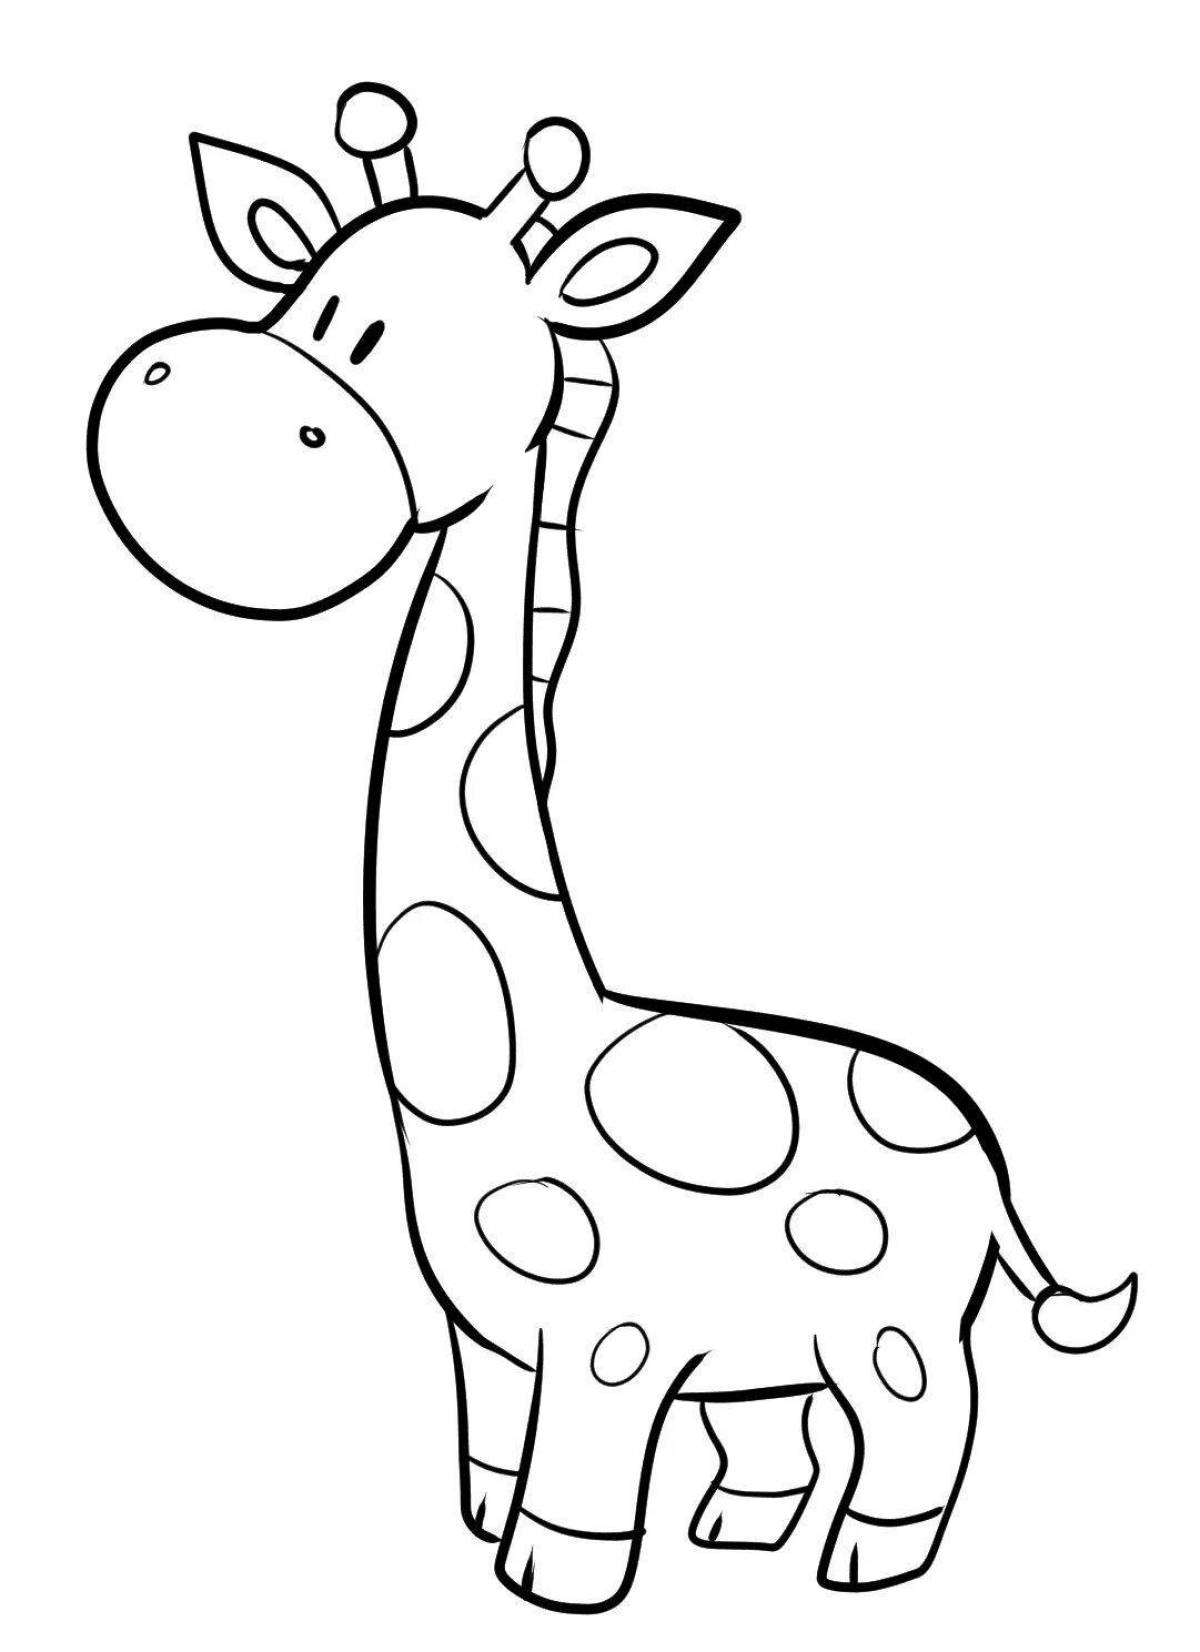 Adorable giraffe coloring book for kids